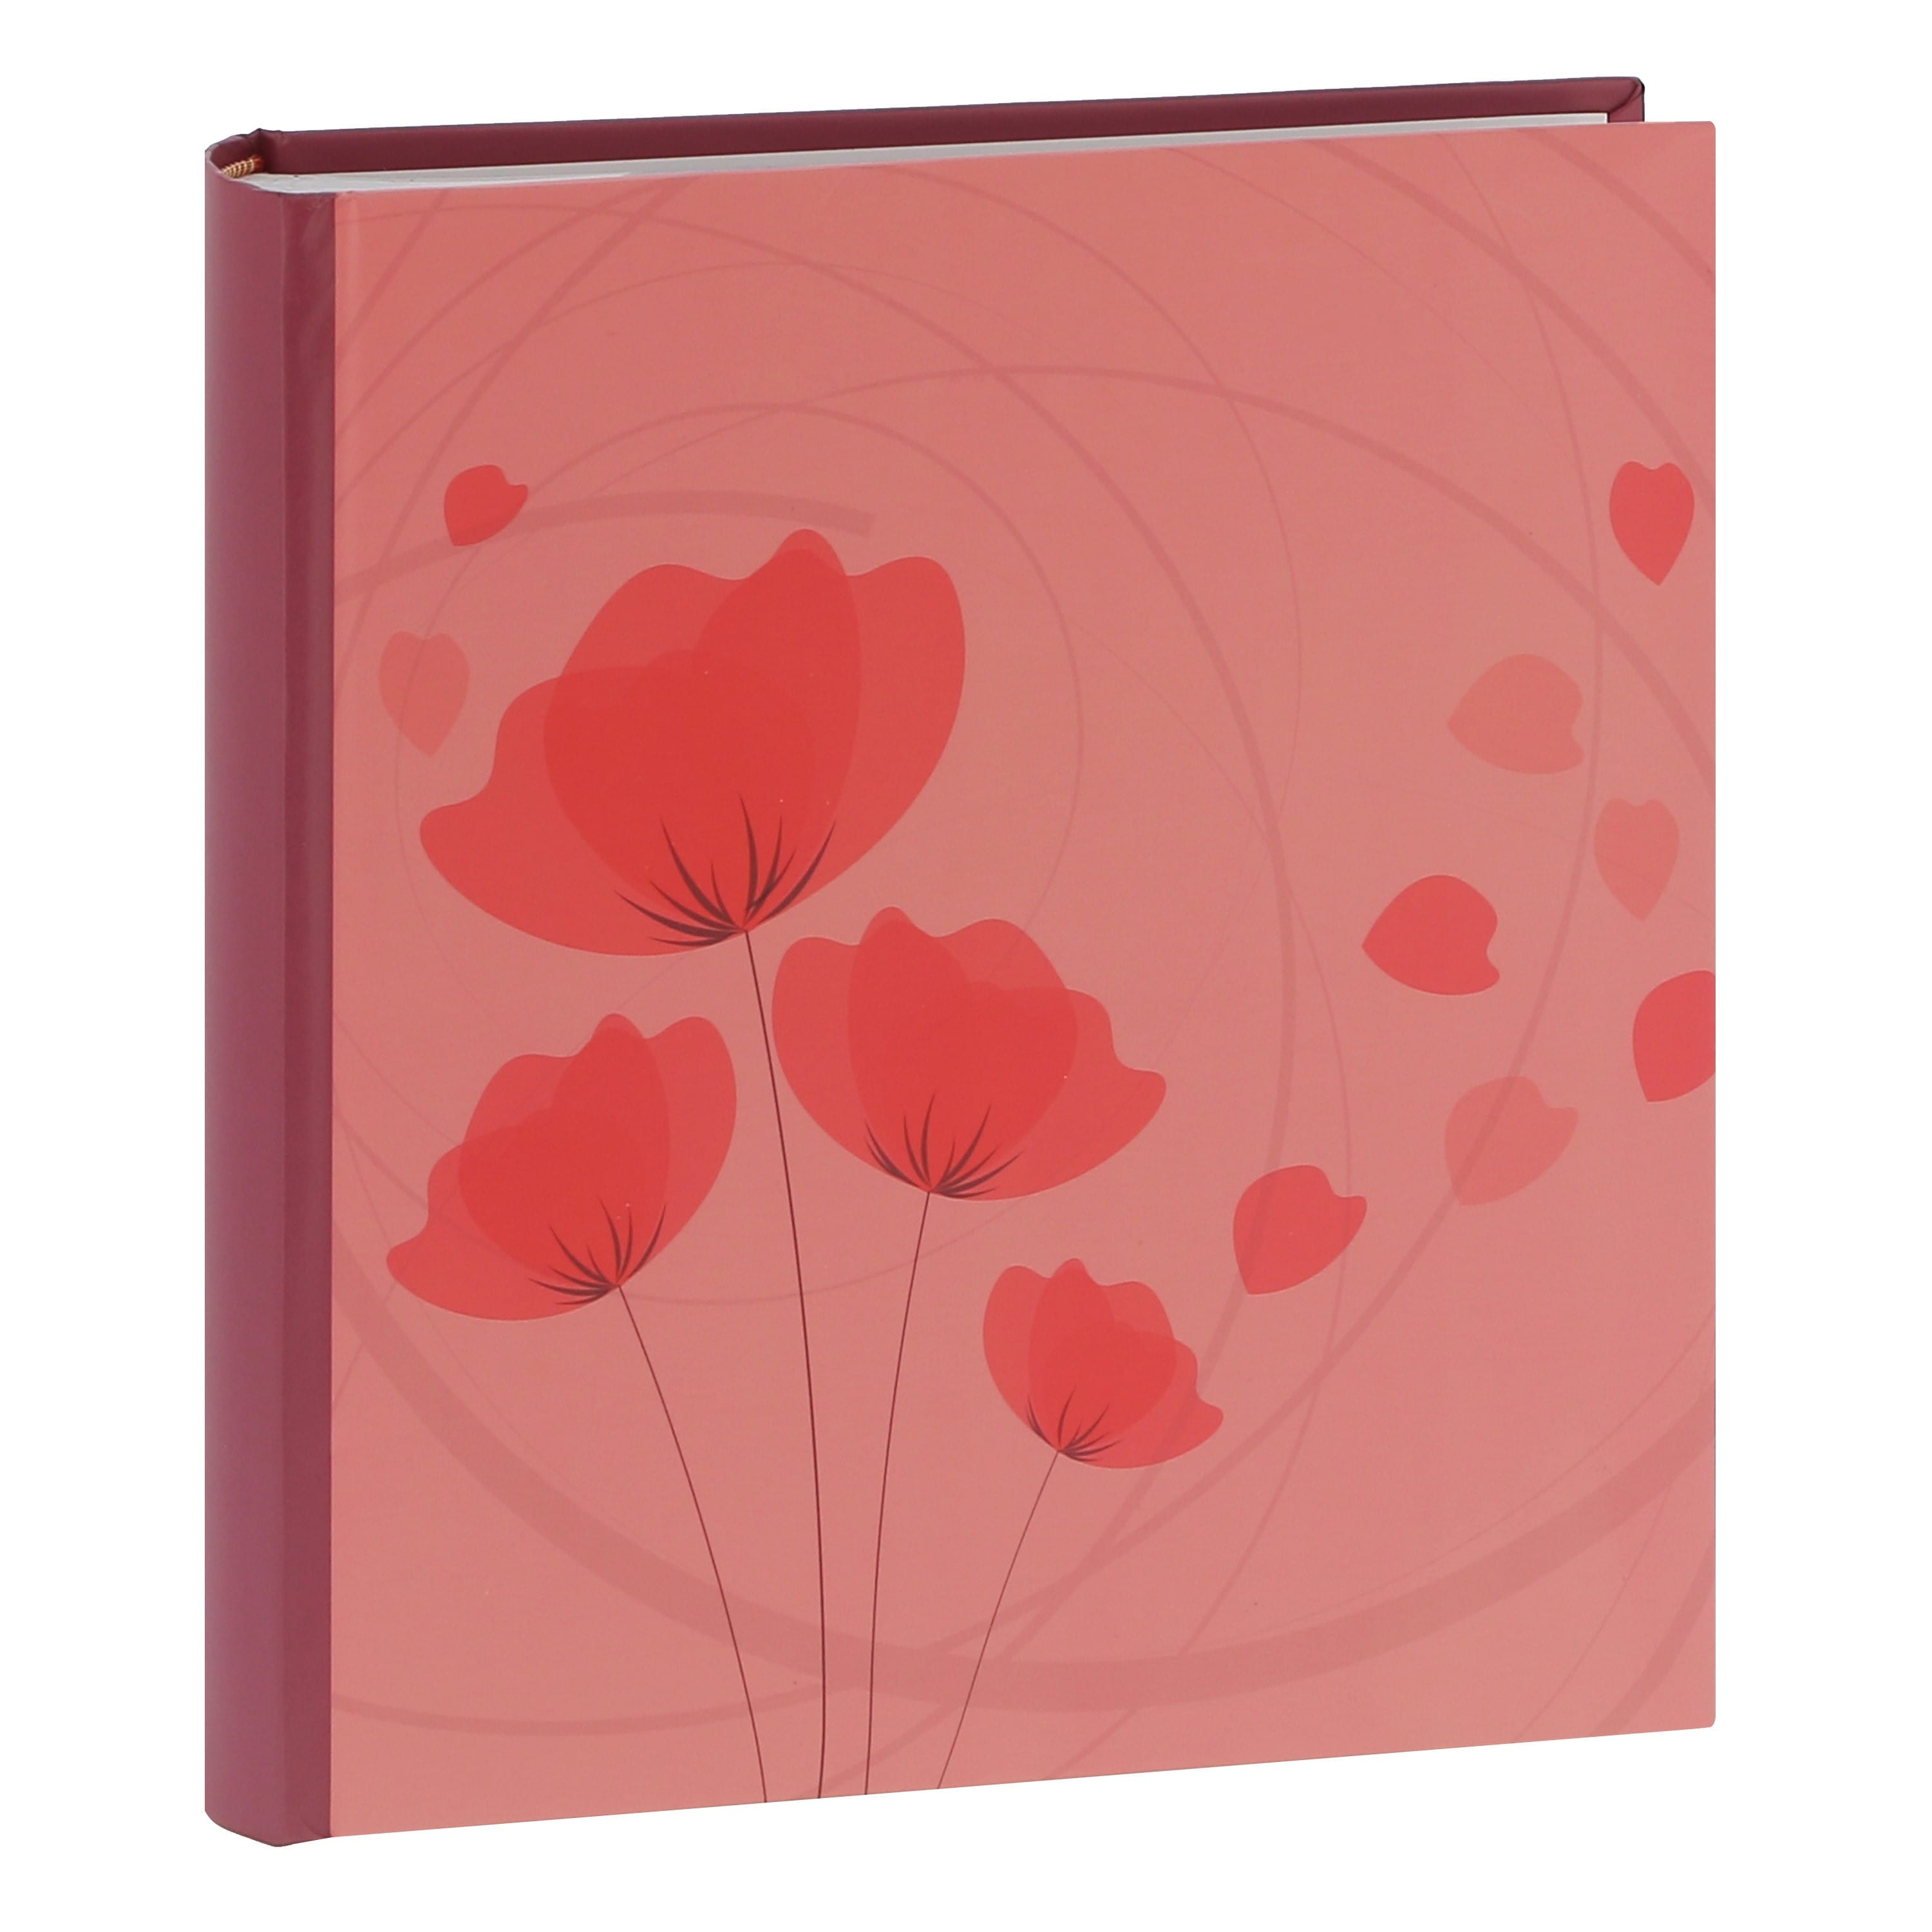 ERICA - Album photo pochettes avec mémo ELLYPSE 2 - 100 pages blanches - 200 photos - Couverture Rose Corail 24x24,8cm